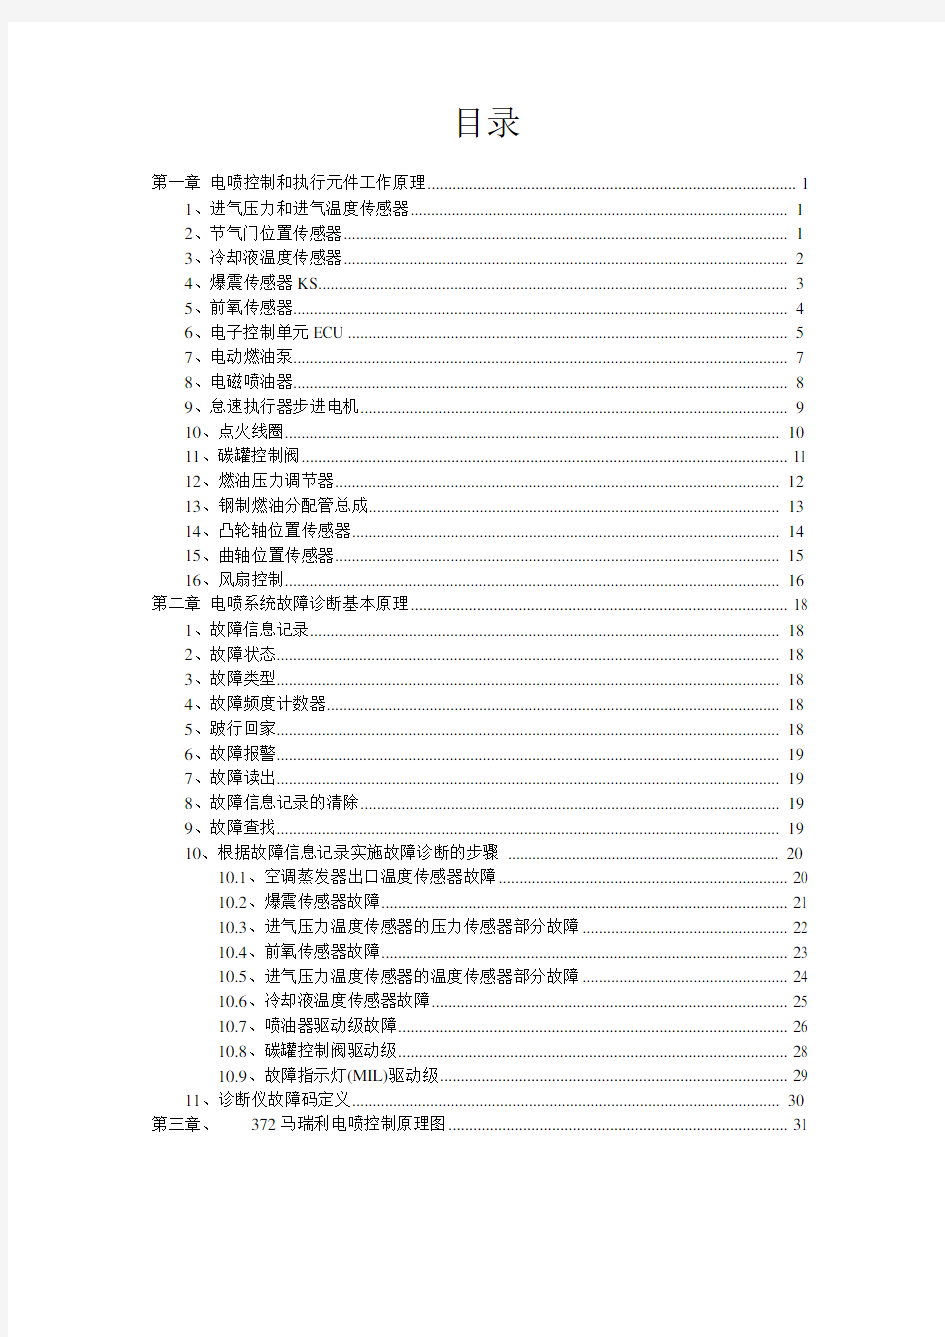 奇瑞QQ3维修手册簿372电喷